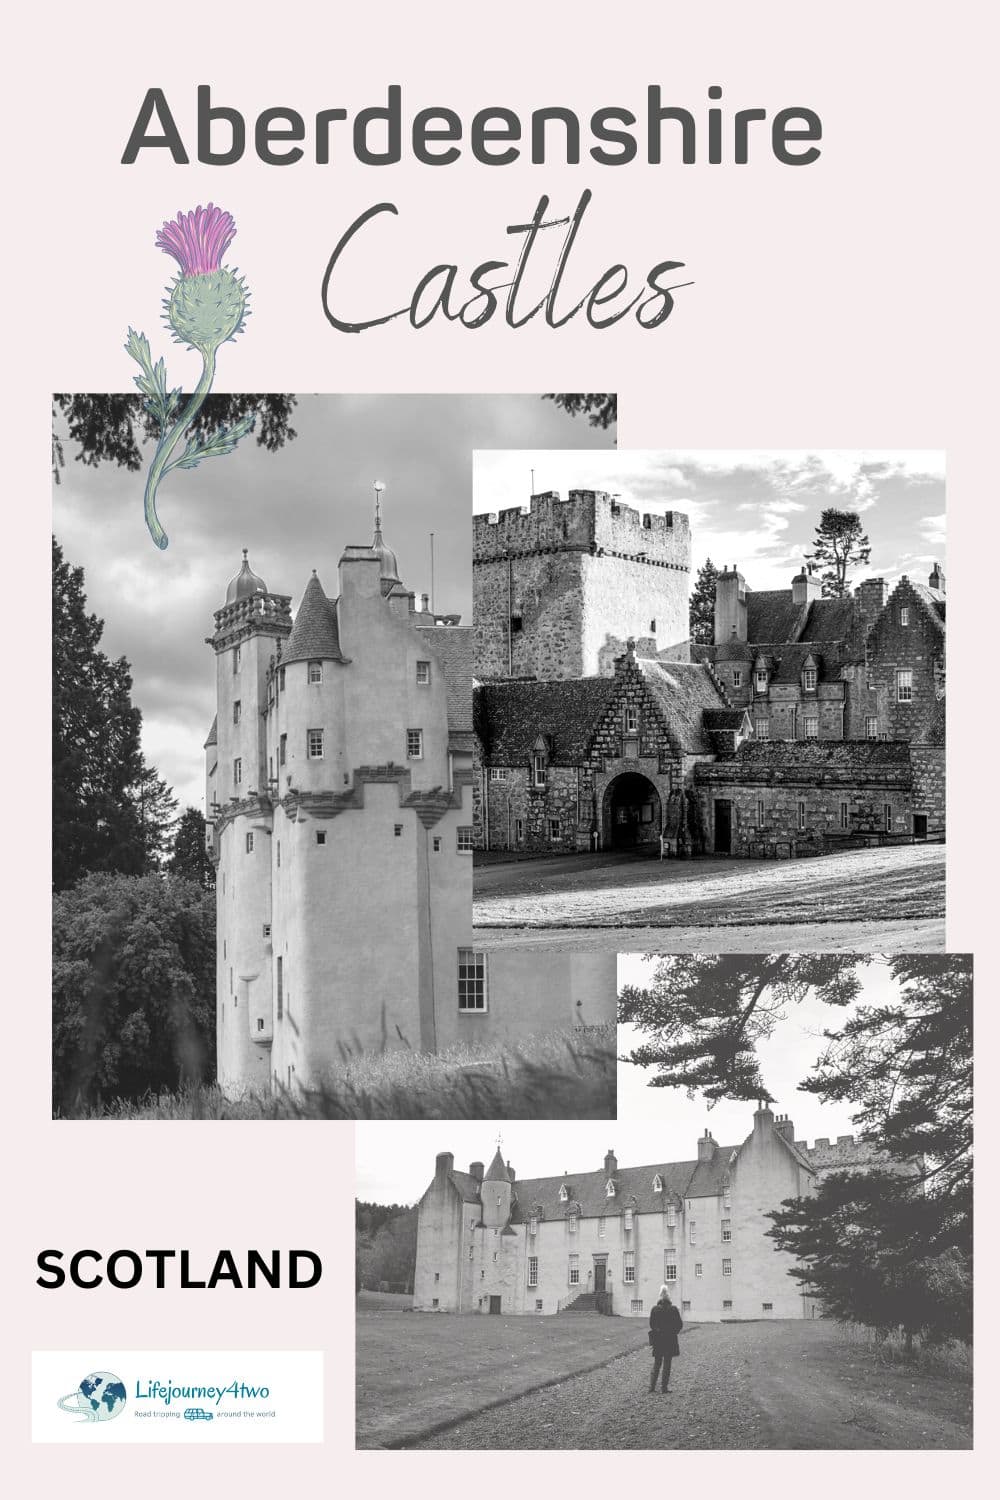 Aberdeenshire Castles Pinterest pin